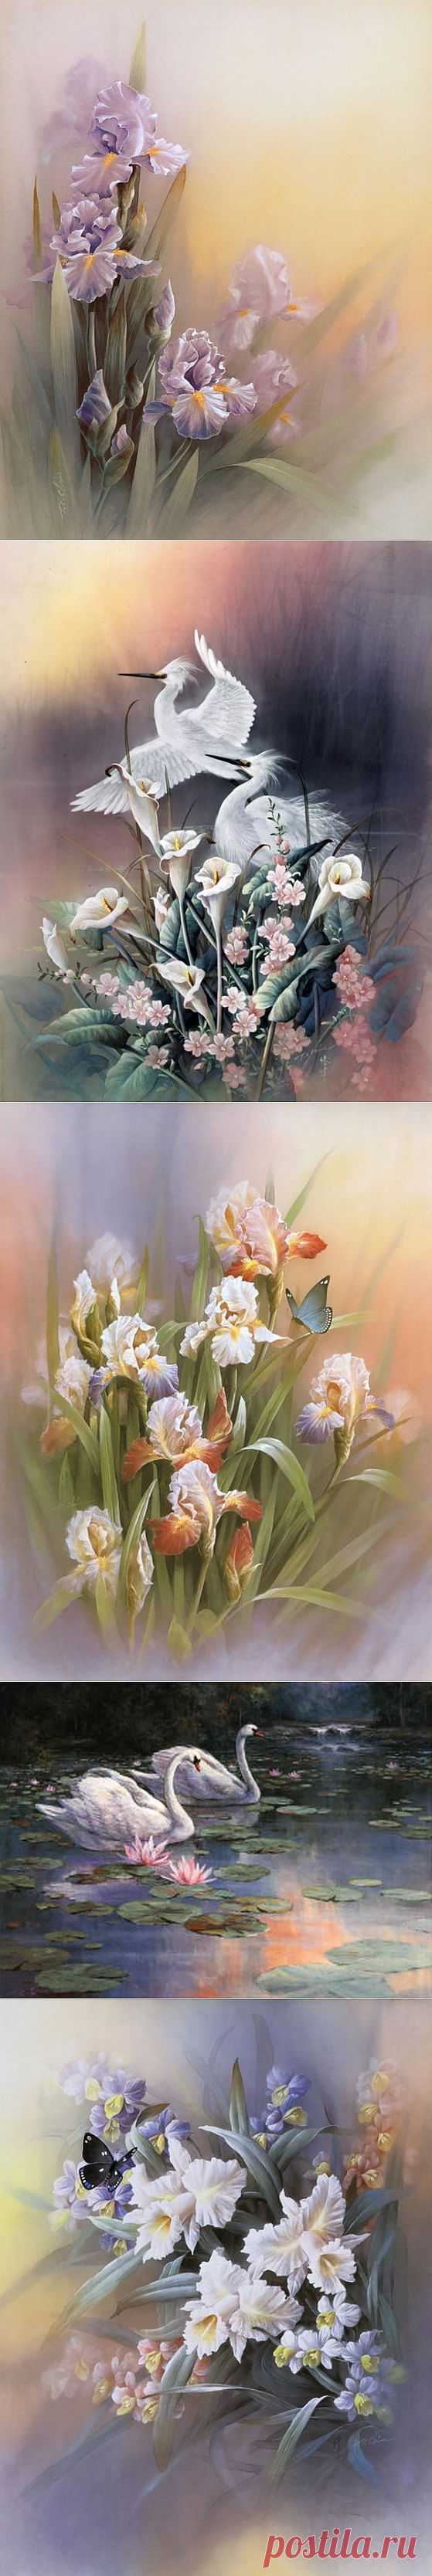 Нежные краски художника T.C.Chiu.